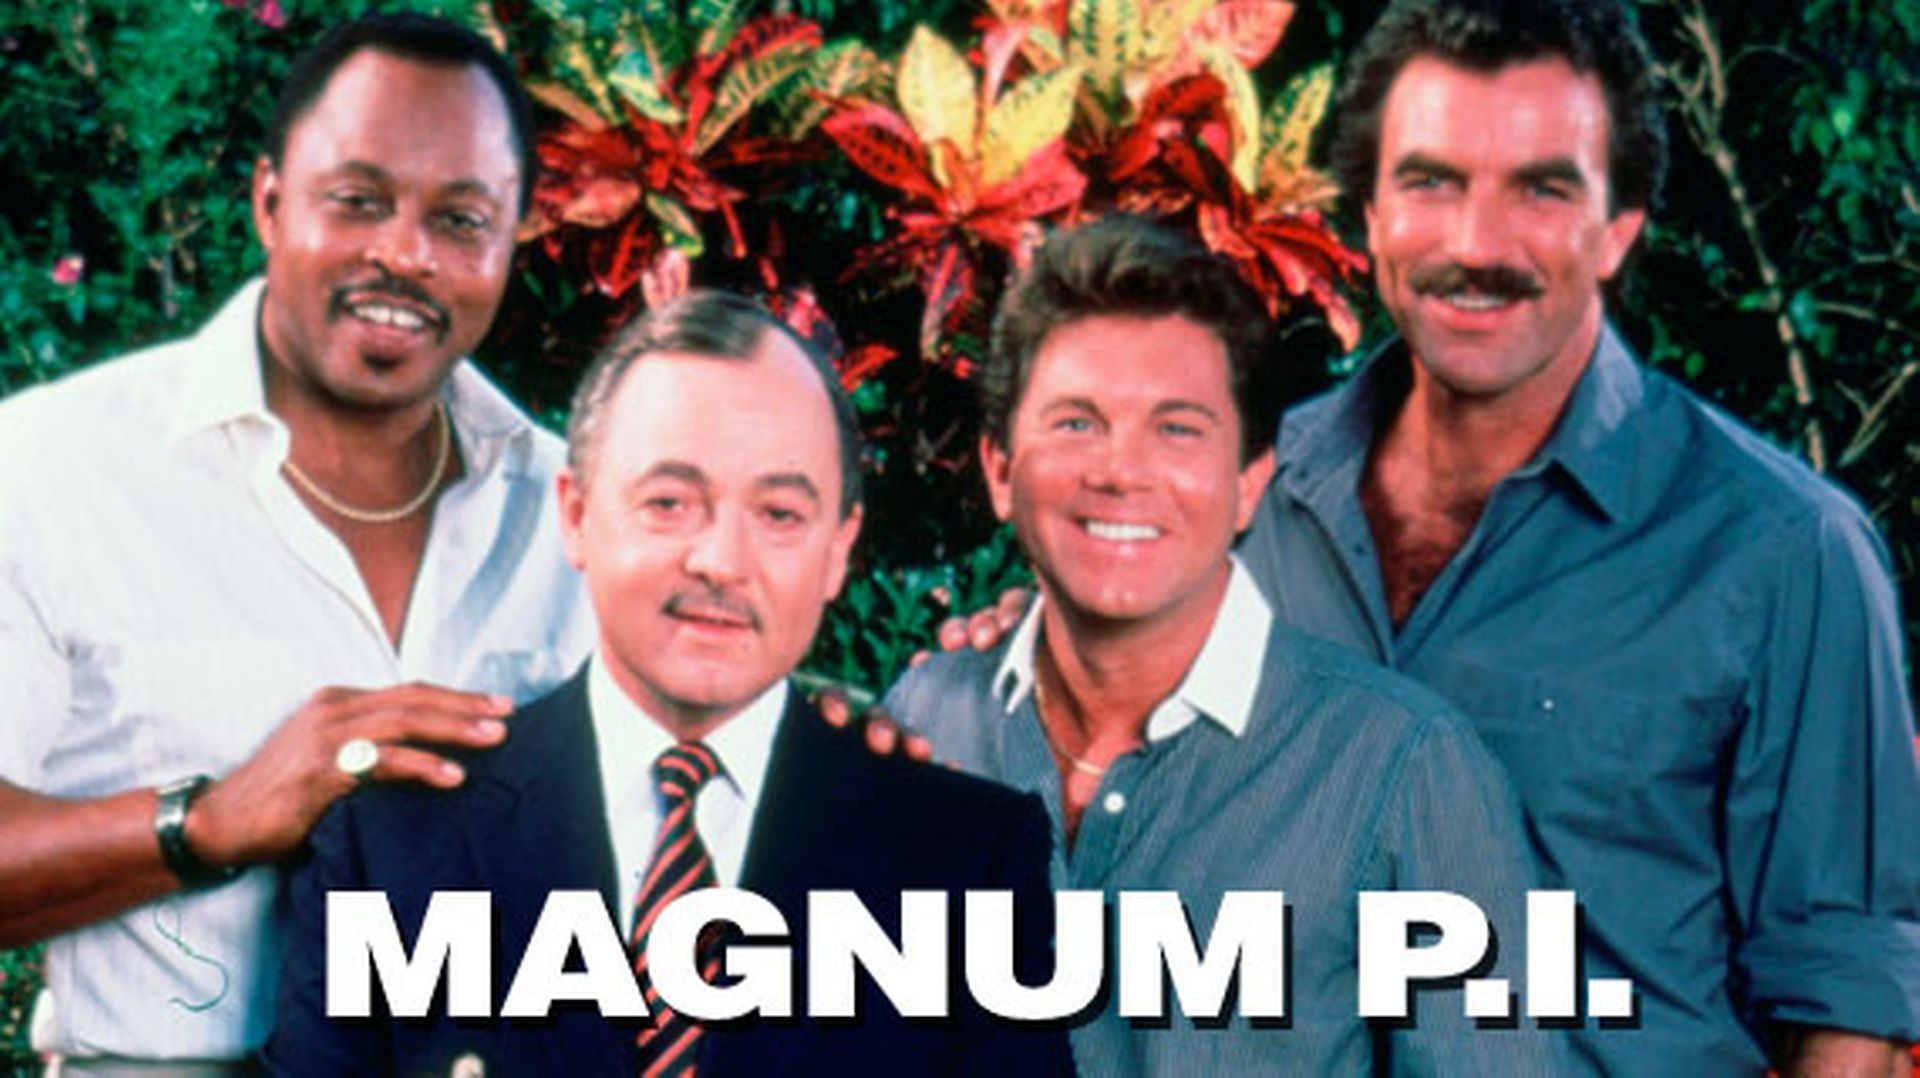 Magnum P.I. Wallpaper. Magnum P.I. Wallpaper, Magnum Force Wallpaper and Magnum Wallpaper